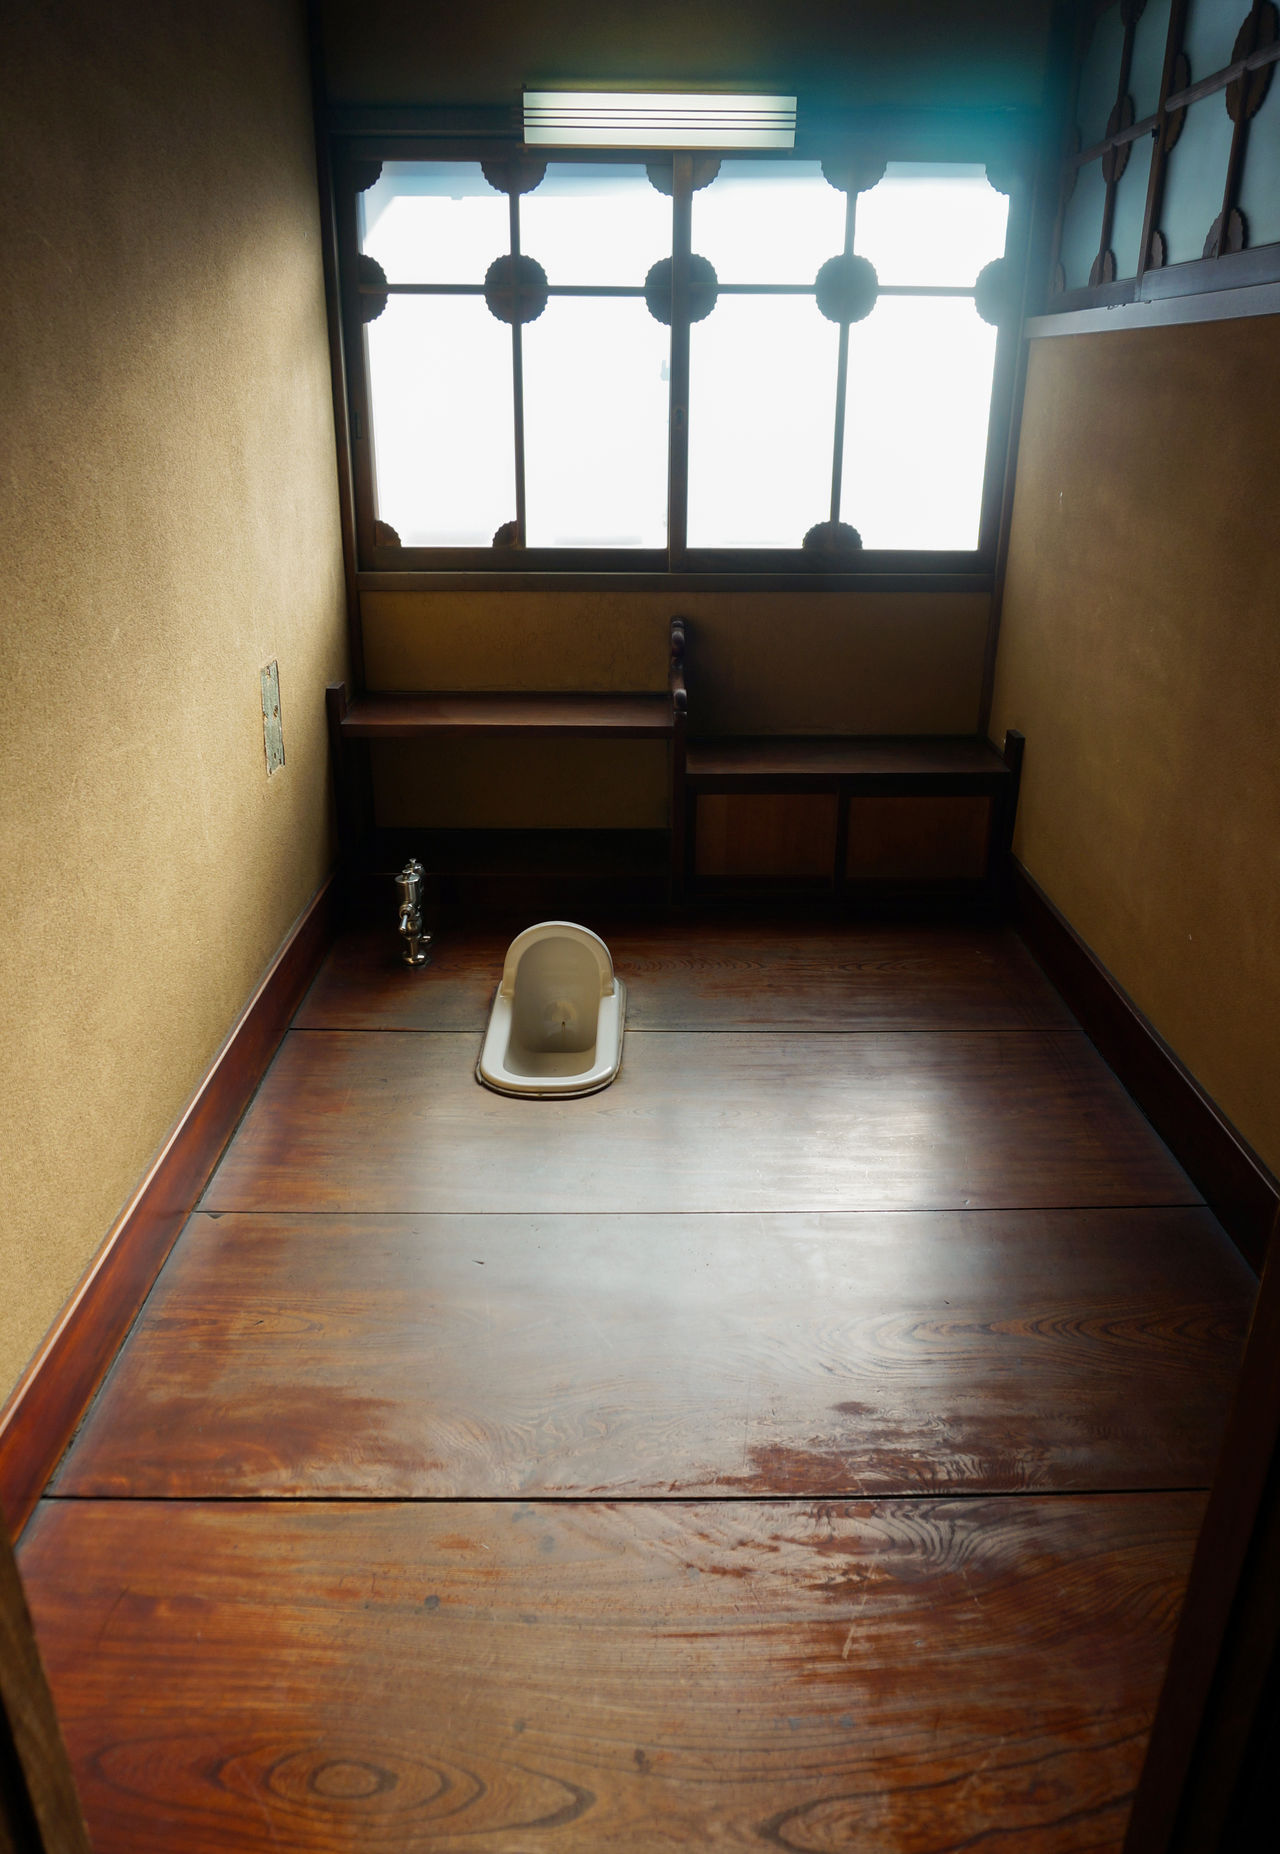 Public toilet in japan